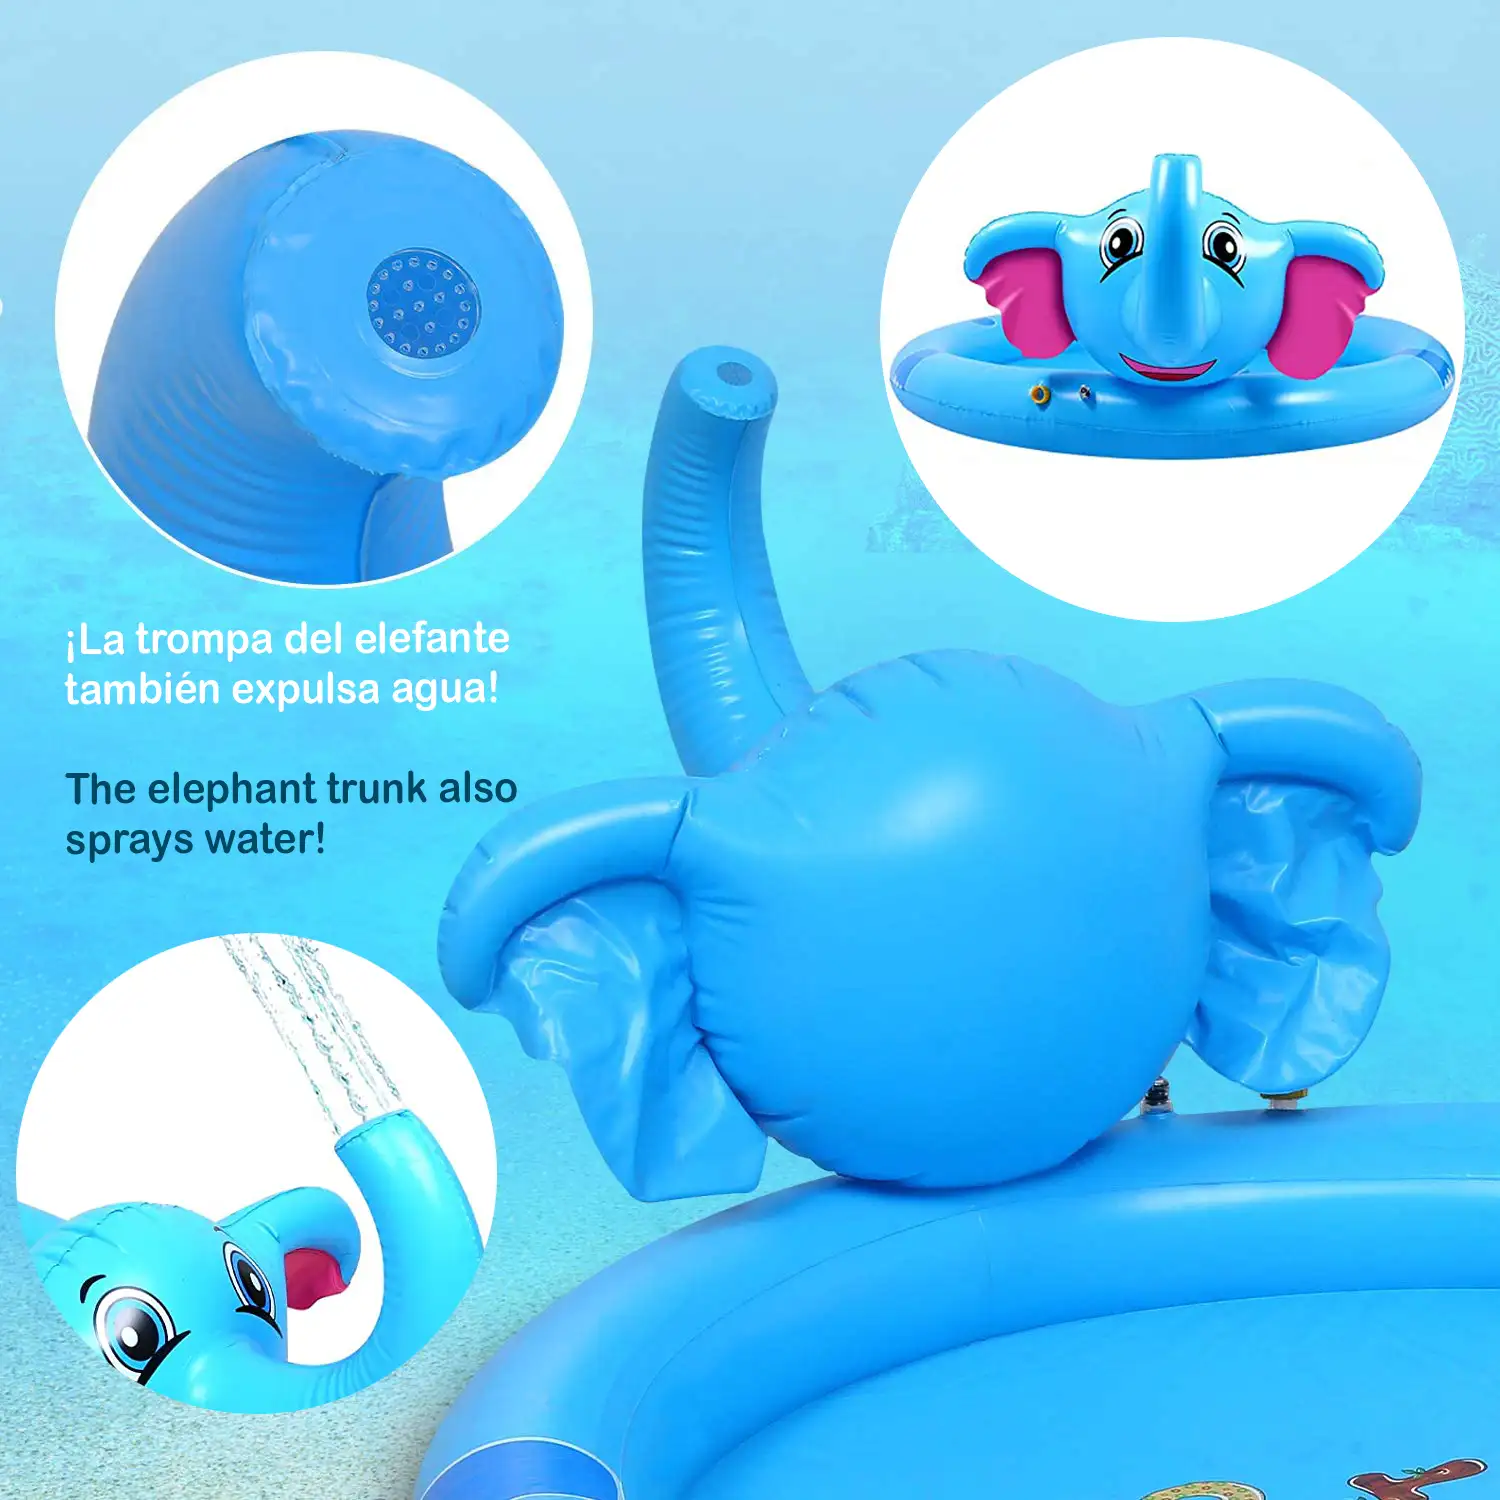 Splash Pad. Juguete inflable y aspersor de agua, divertido juego para niños. 200cm. Diseño elefante con trompa aspersor.